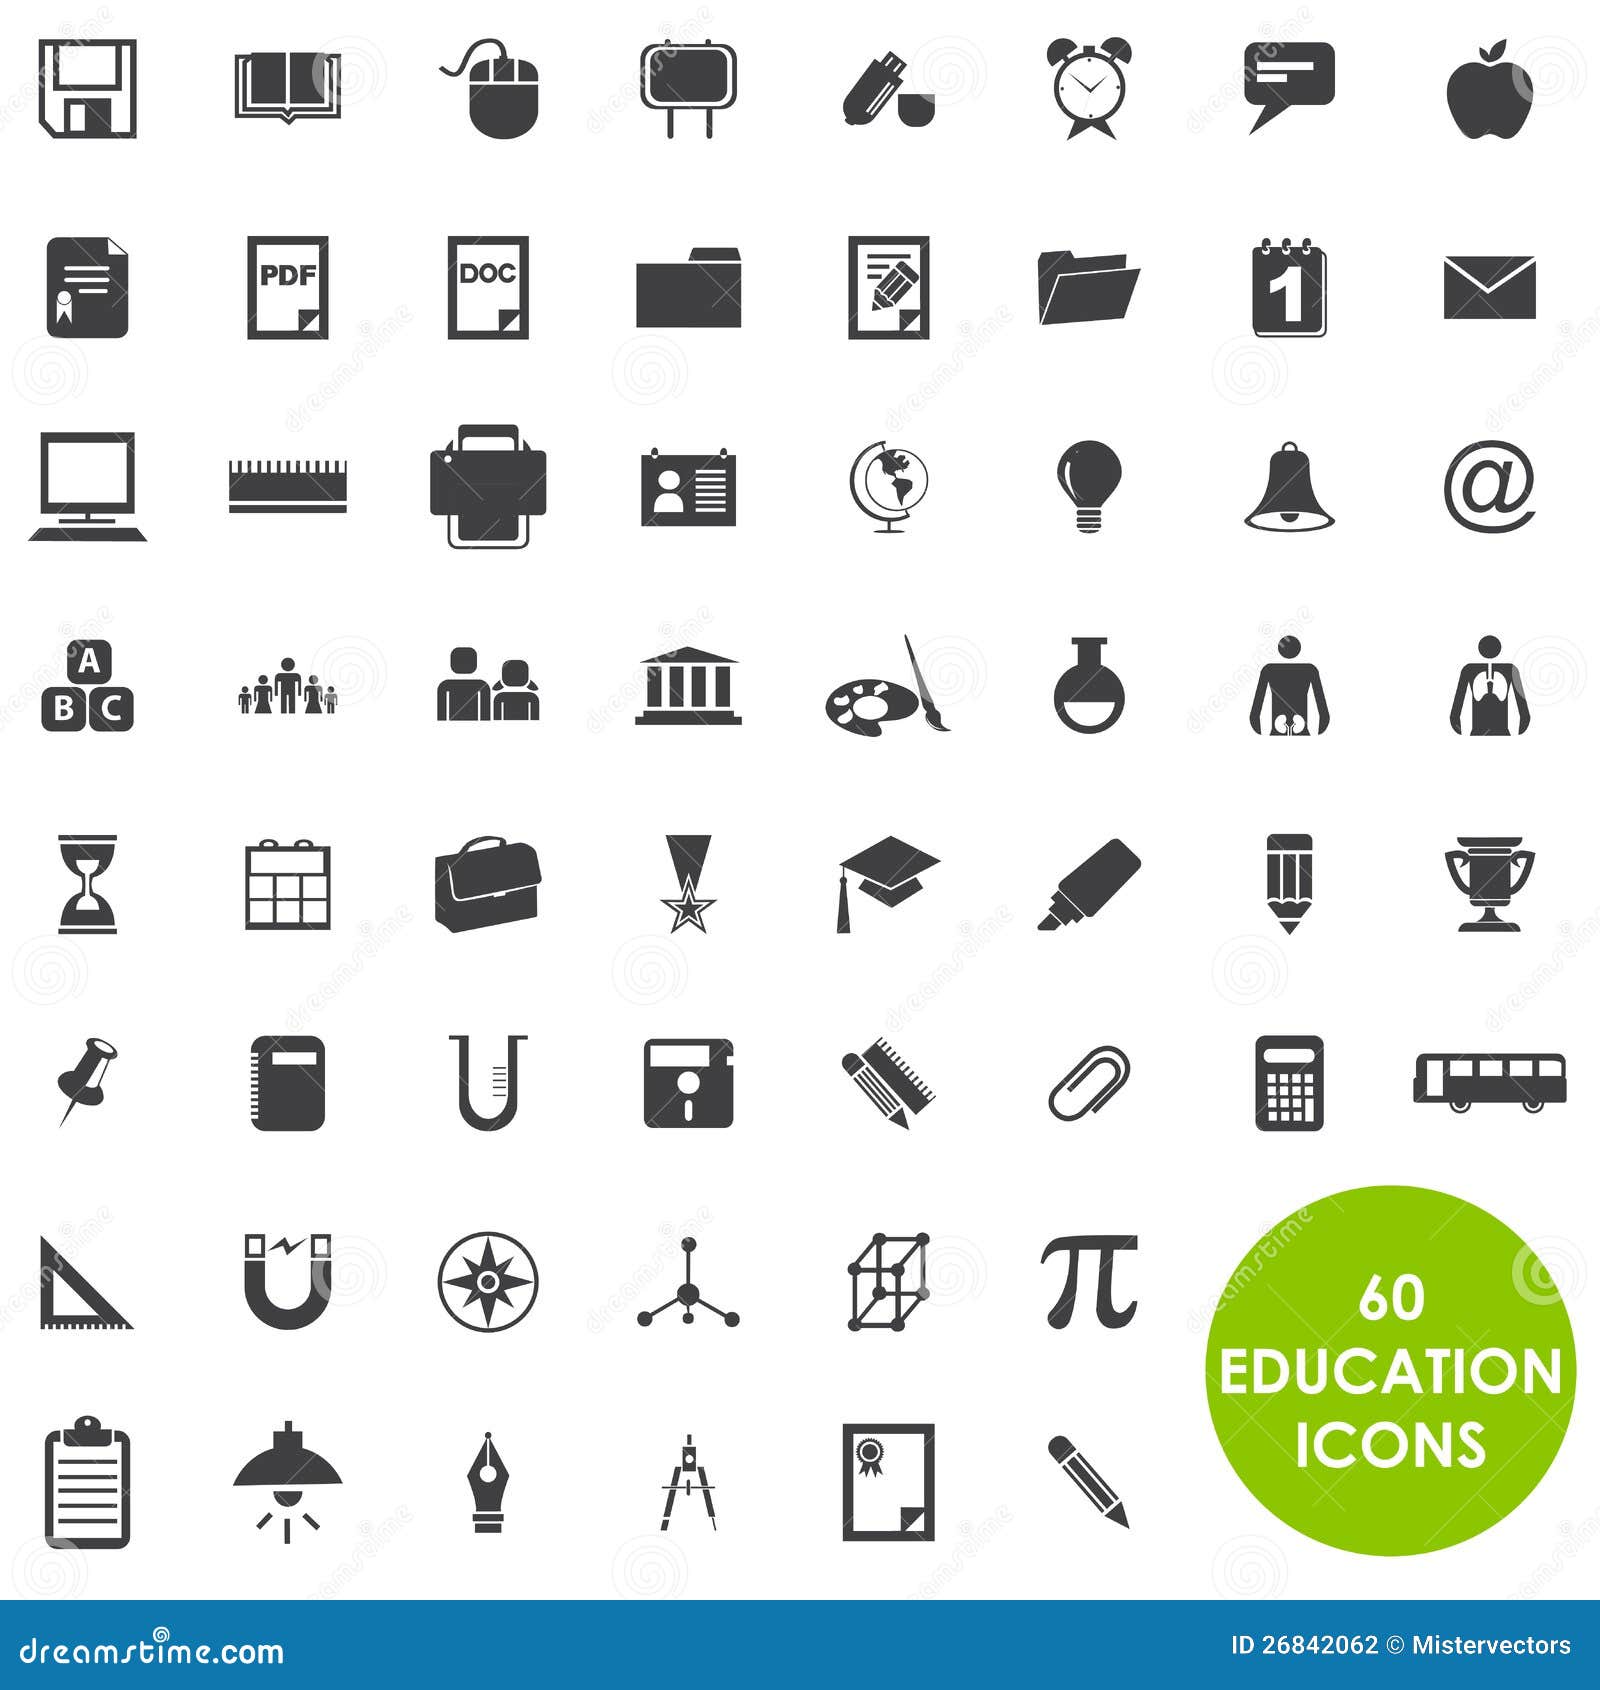 education icons basics